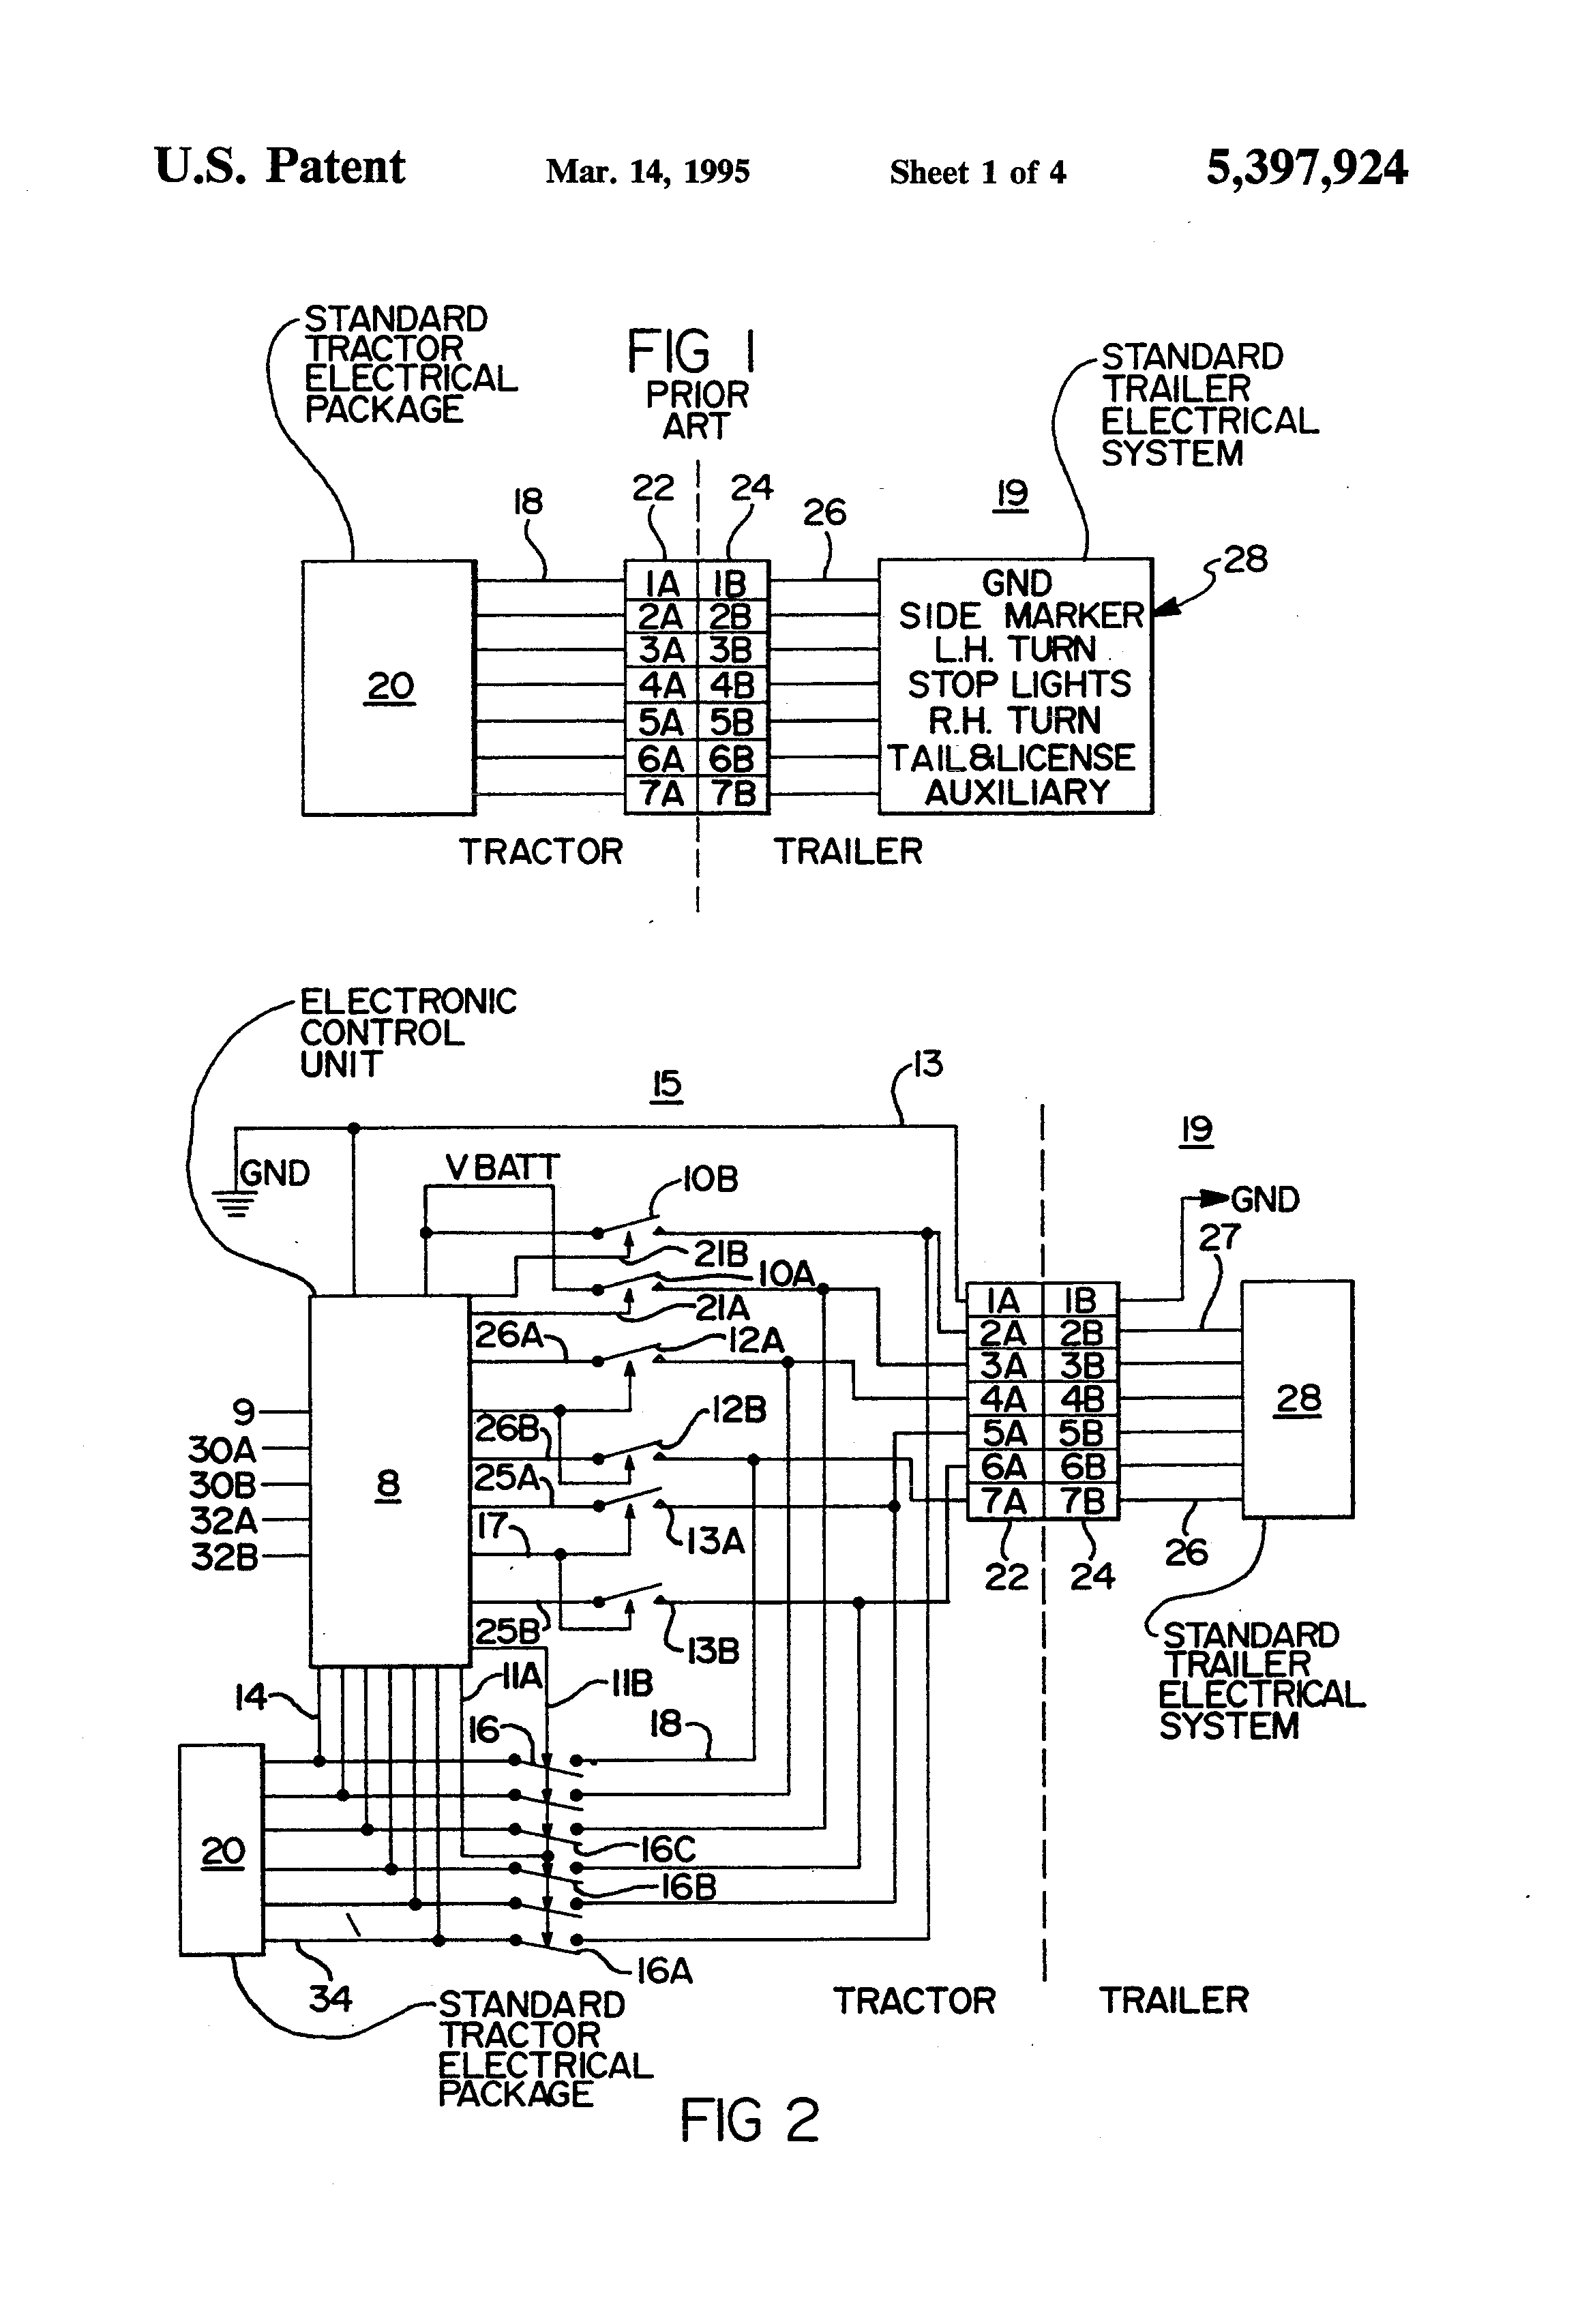 Ford Ab Brake Module Wiring Diagram